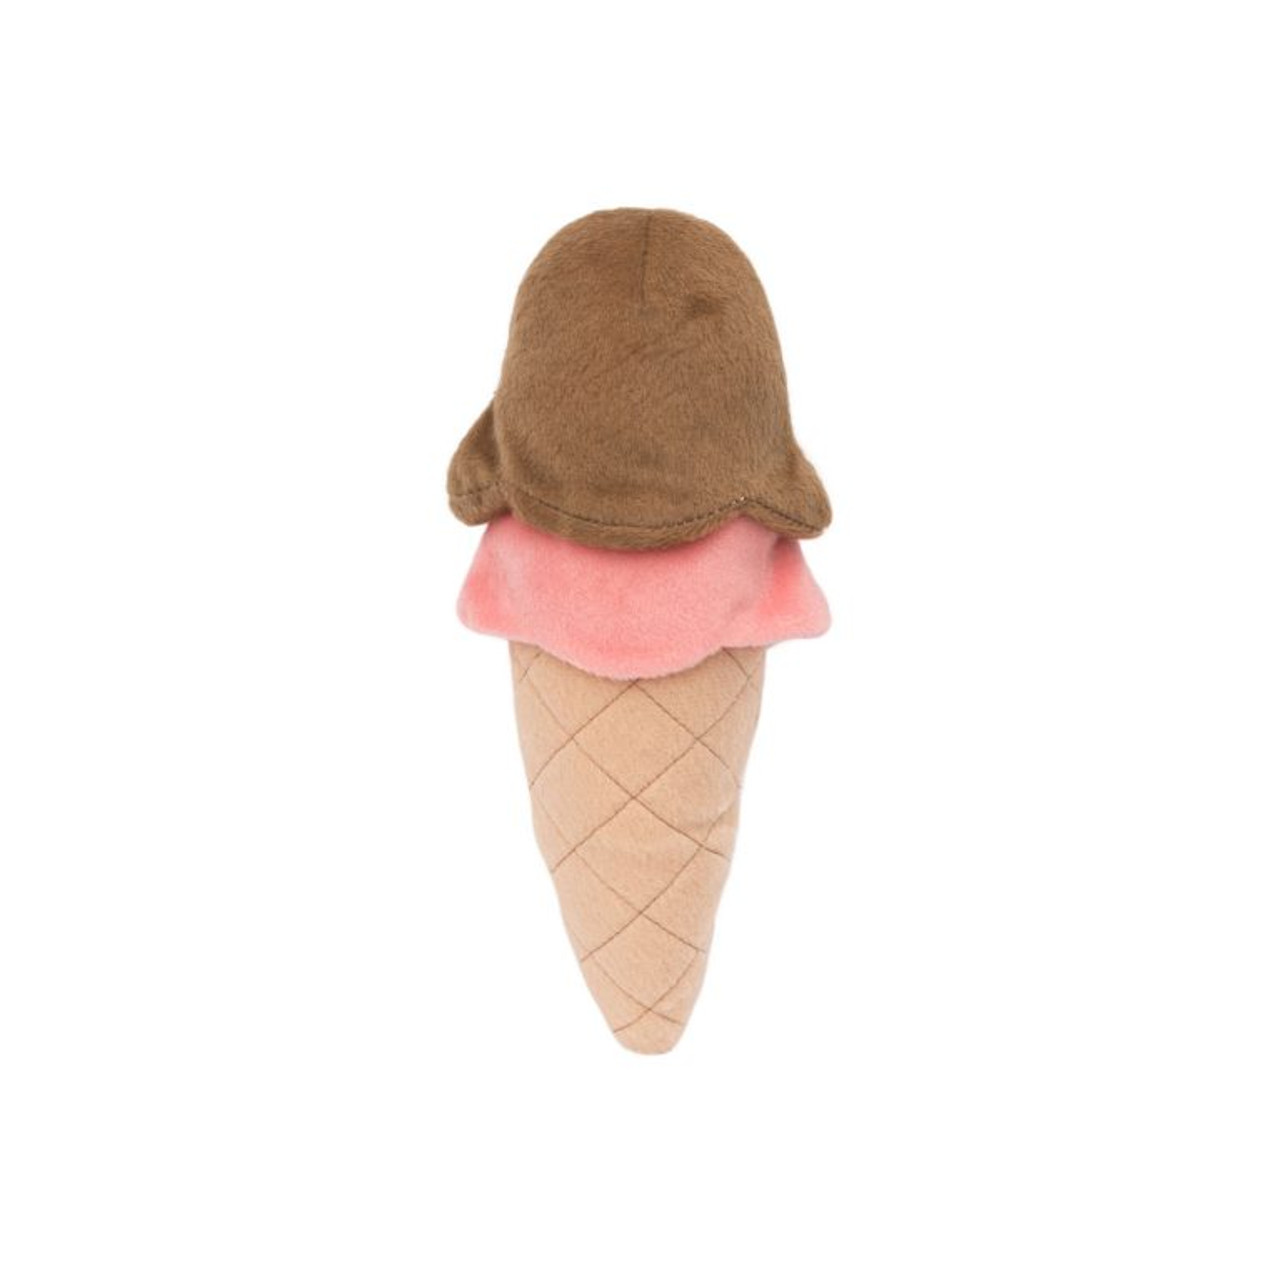 NomNomz Ice Cream Toy